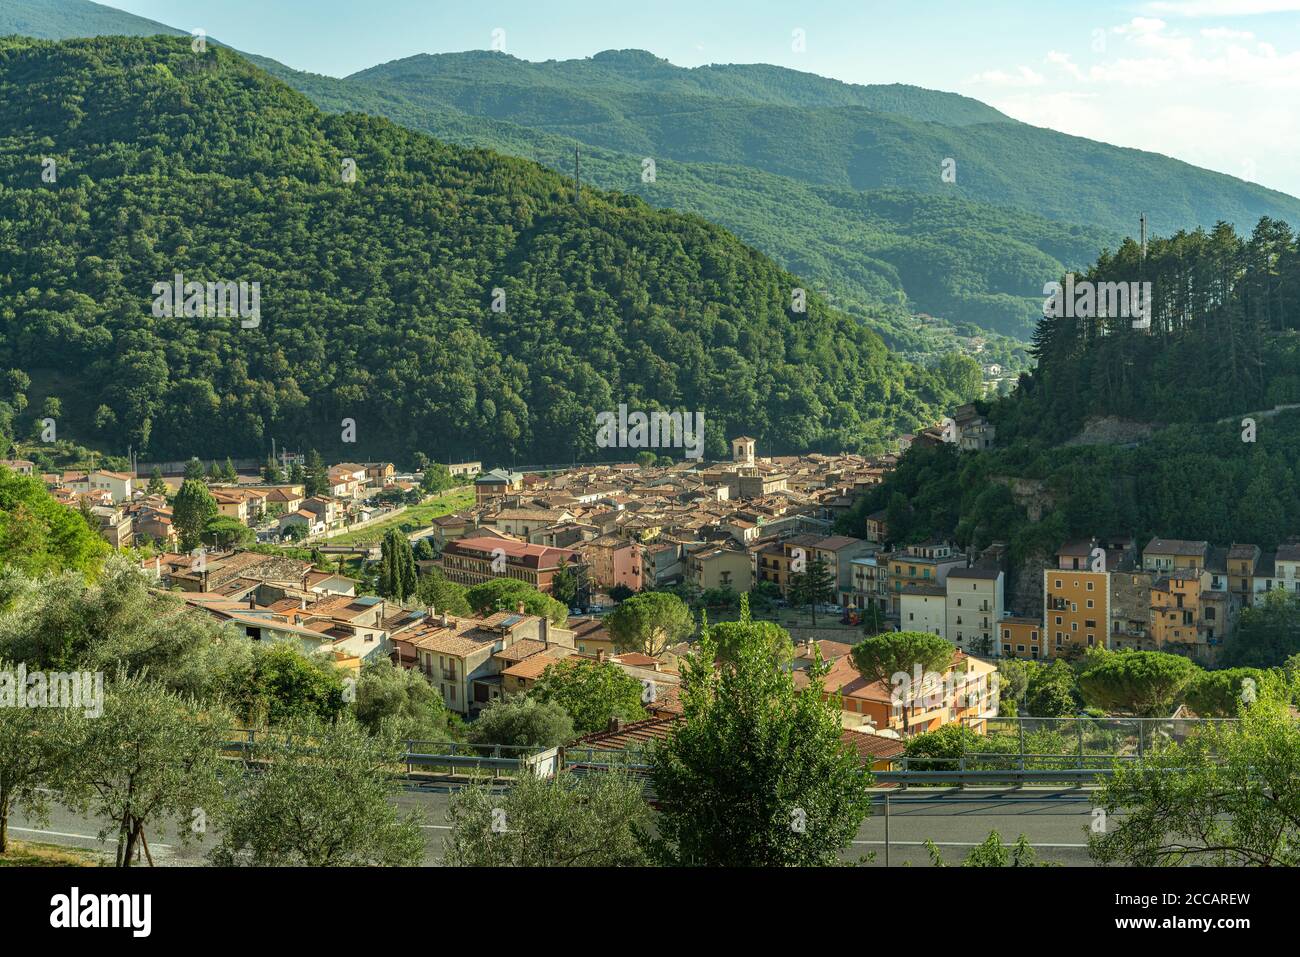 Splendida vista sulla Valle di Corno, con Antrodoco che controlla l'accesso. Antrodoco è famosa per le sue castagne. Regione Lazio, Italia, Europa Foto Stock